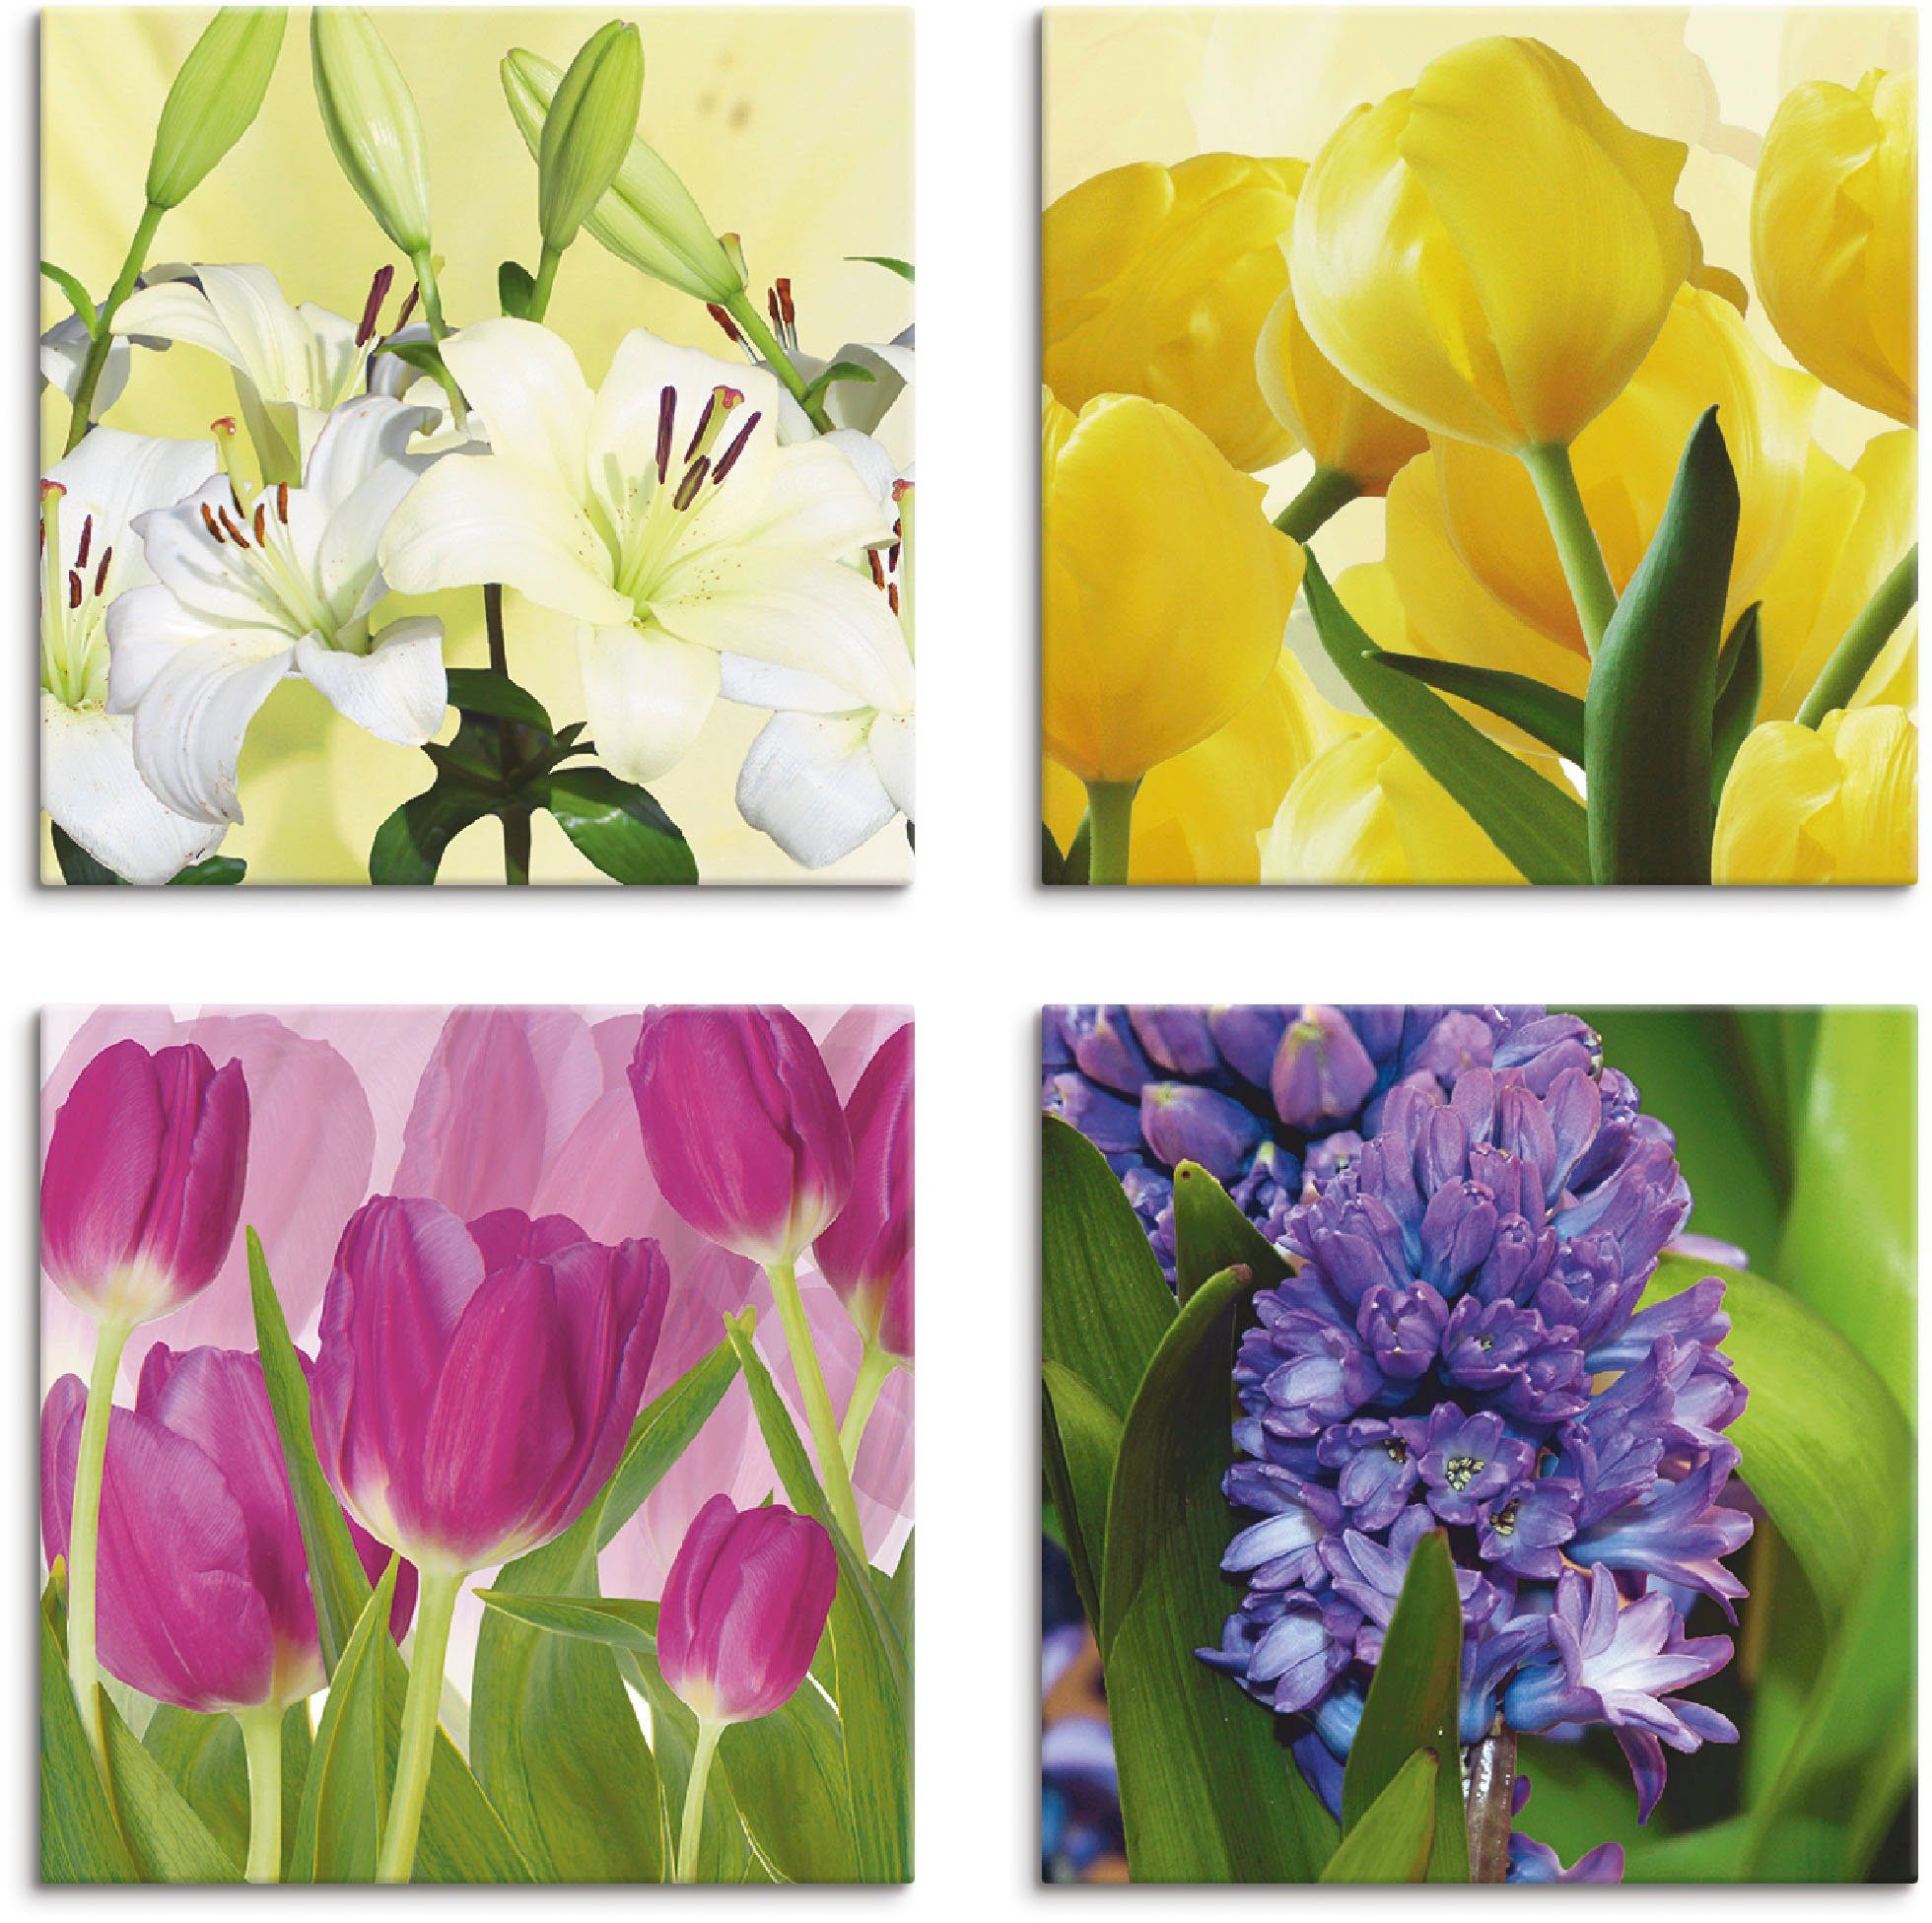 Artland Artprint op linnen Tulpen lelies hyacint (4 stuks)